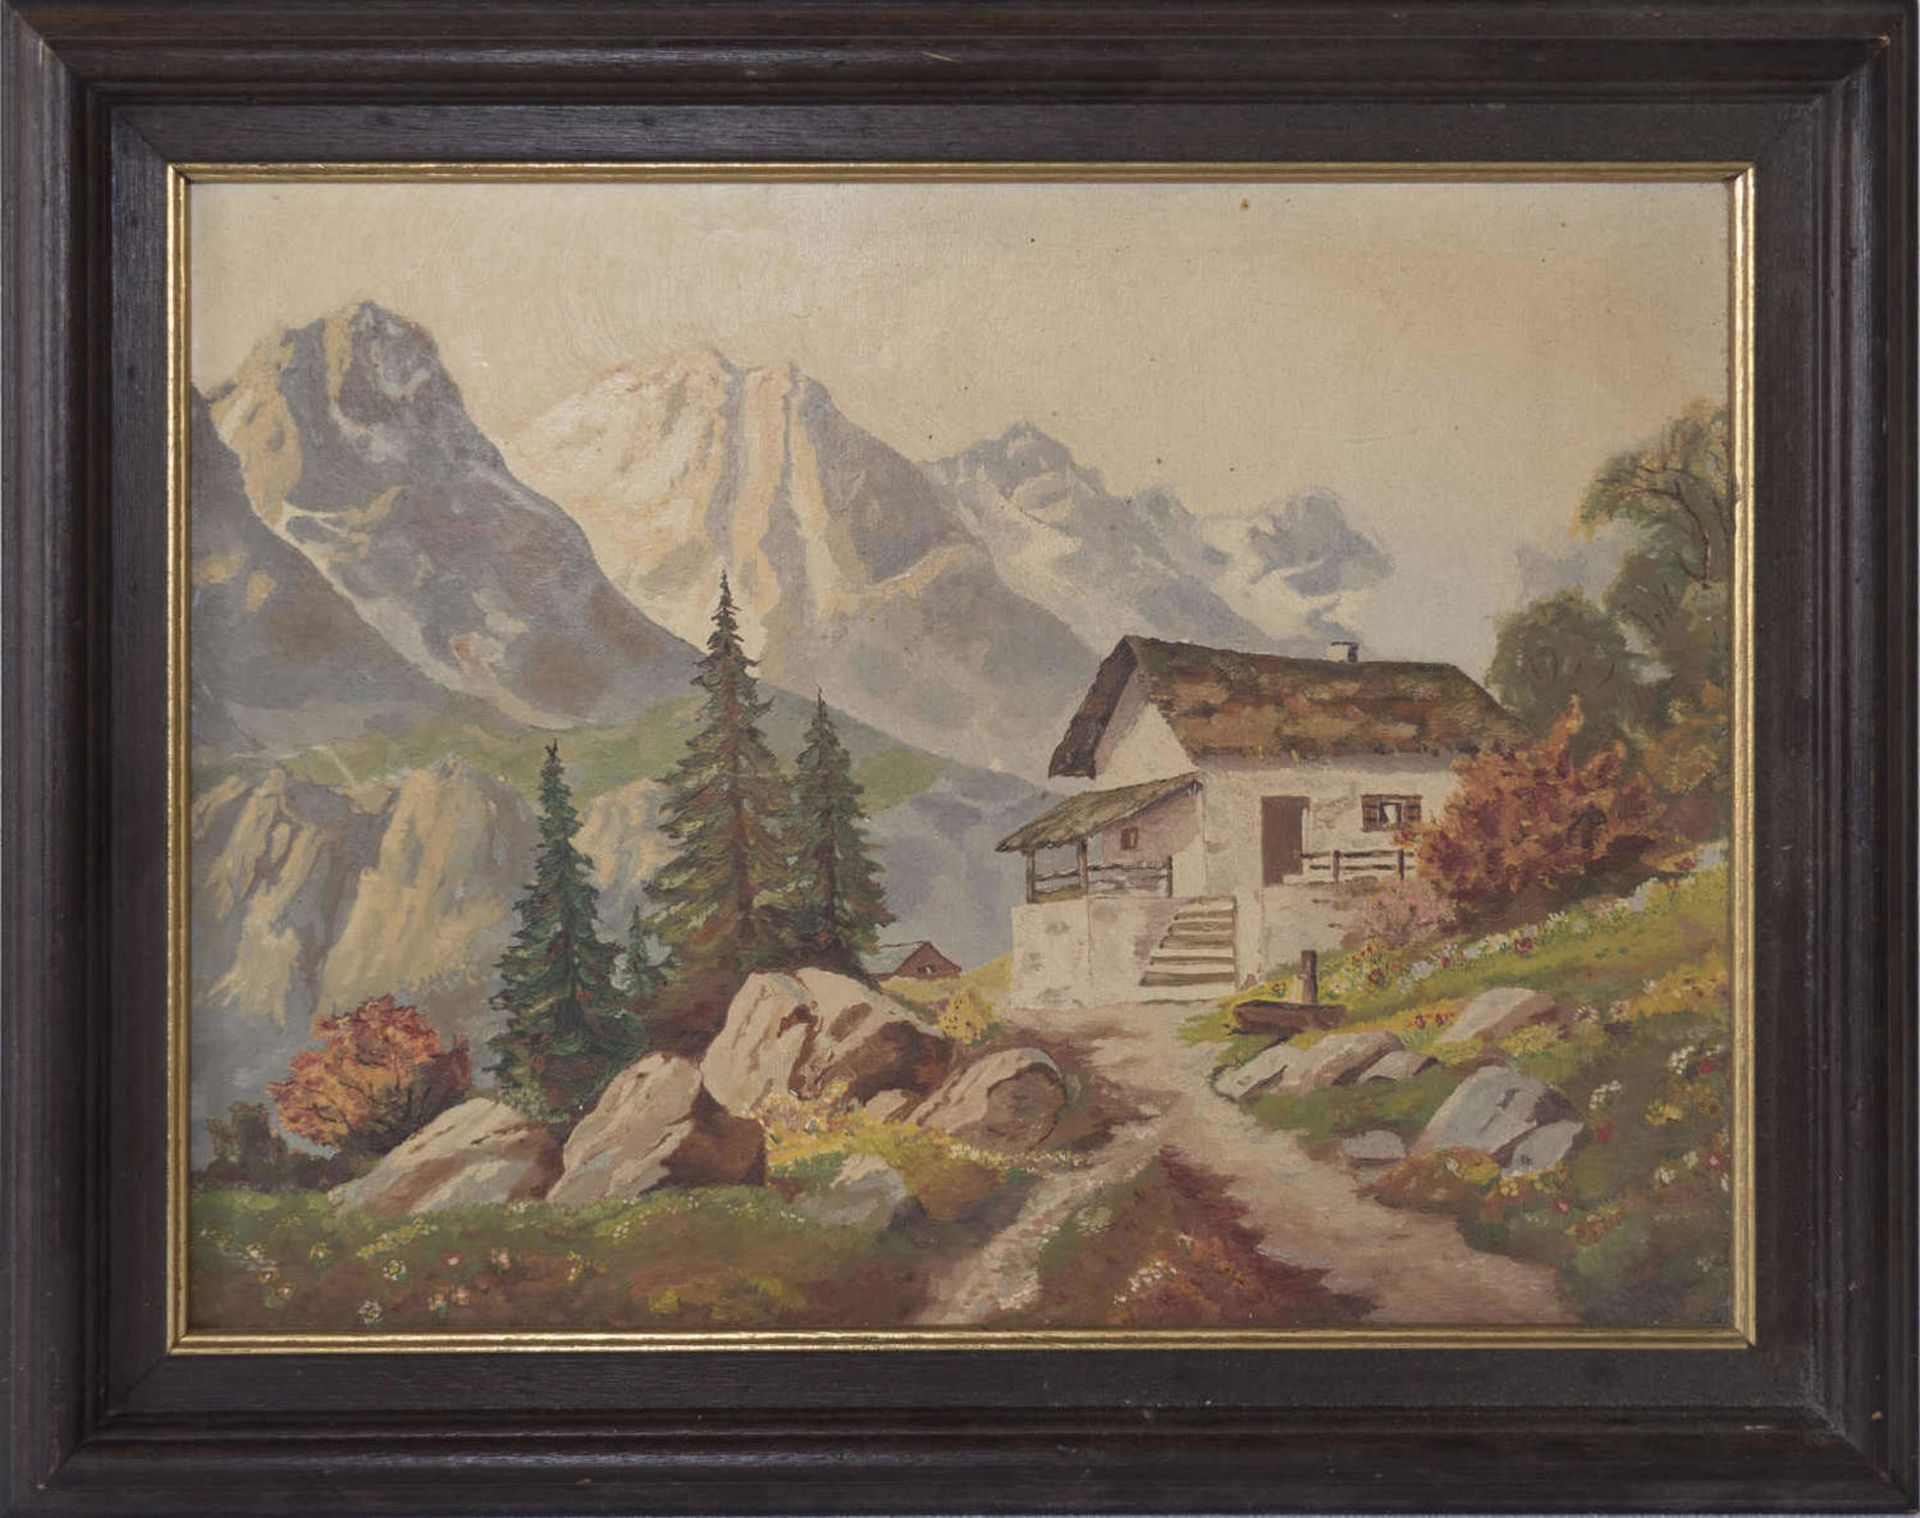 Unbekannter Künstler, Ölgemälde "Alpenlandschaft mit Schutzhütte". Öl auf Holz. Maße: ca. 48 cm x